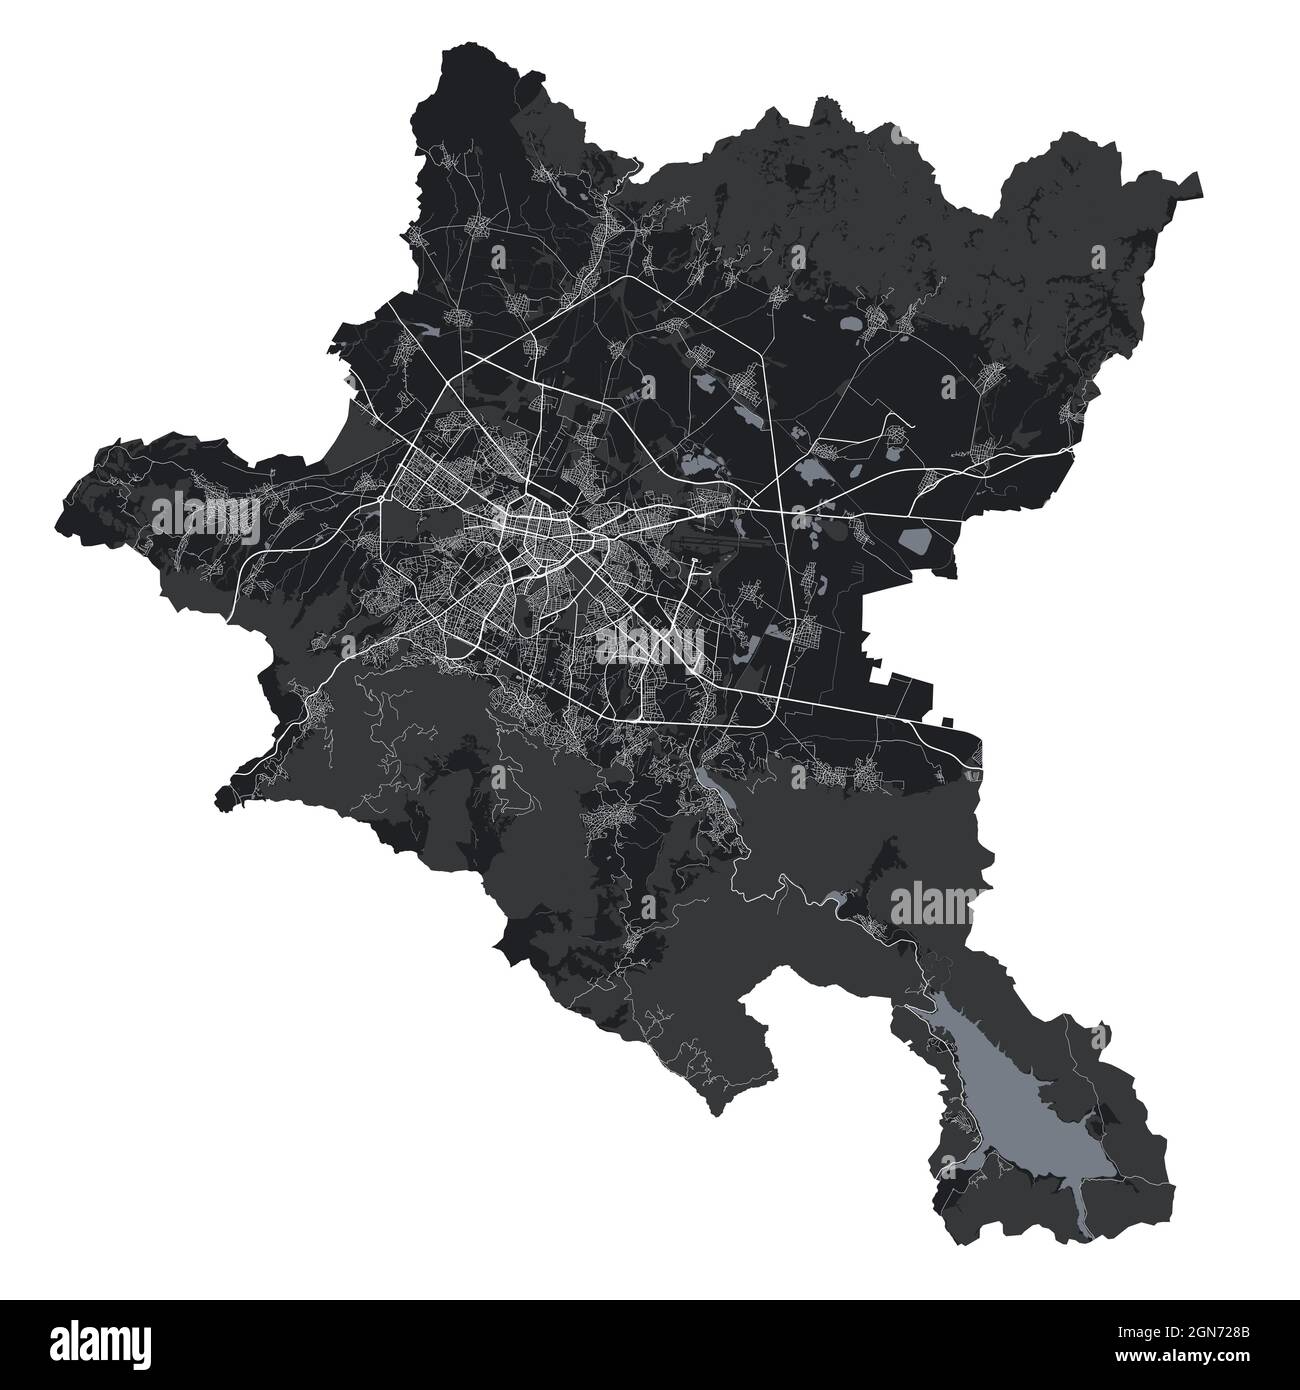 Mappa di Sofia. Mappa vettoriale dettagliata dell'area amministrativa della città di Sofia. Paesaggio urbano poster vista aria metropolitana. Terra nera con strade bianche, strade e AV Illustrazione Vettoriale